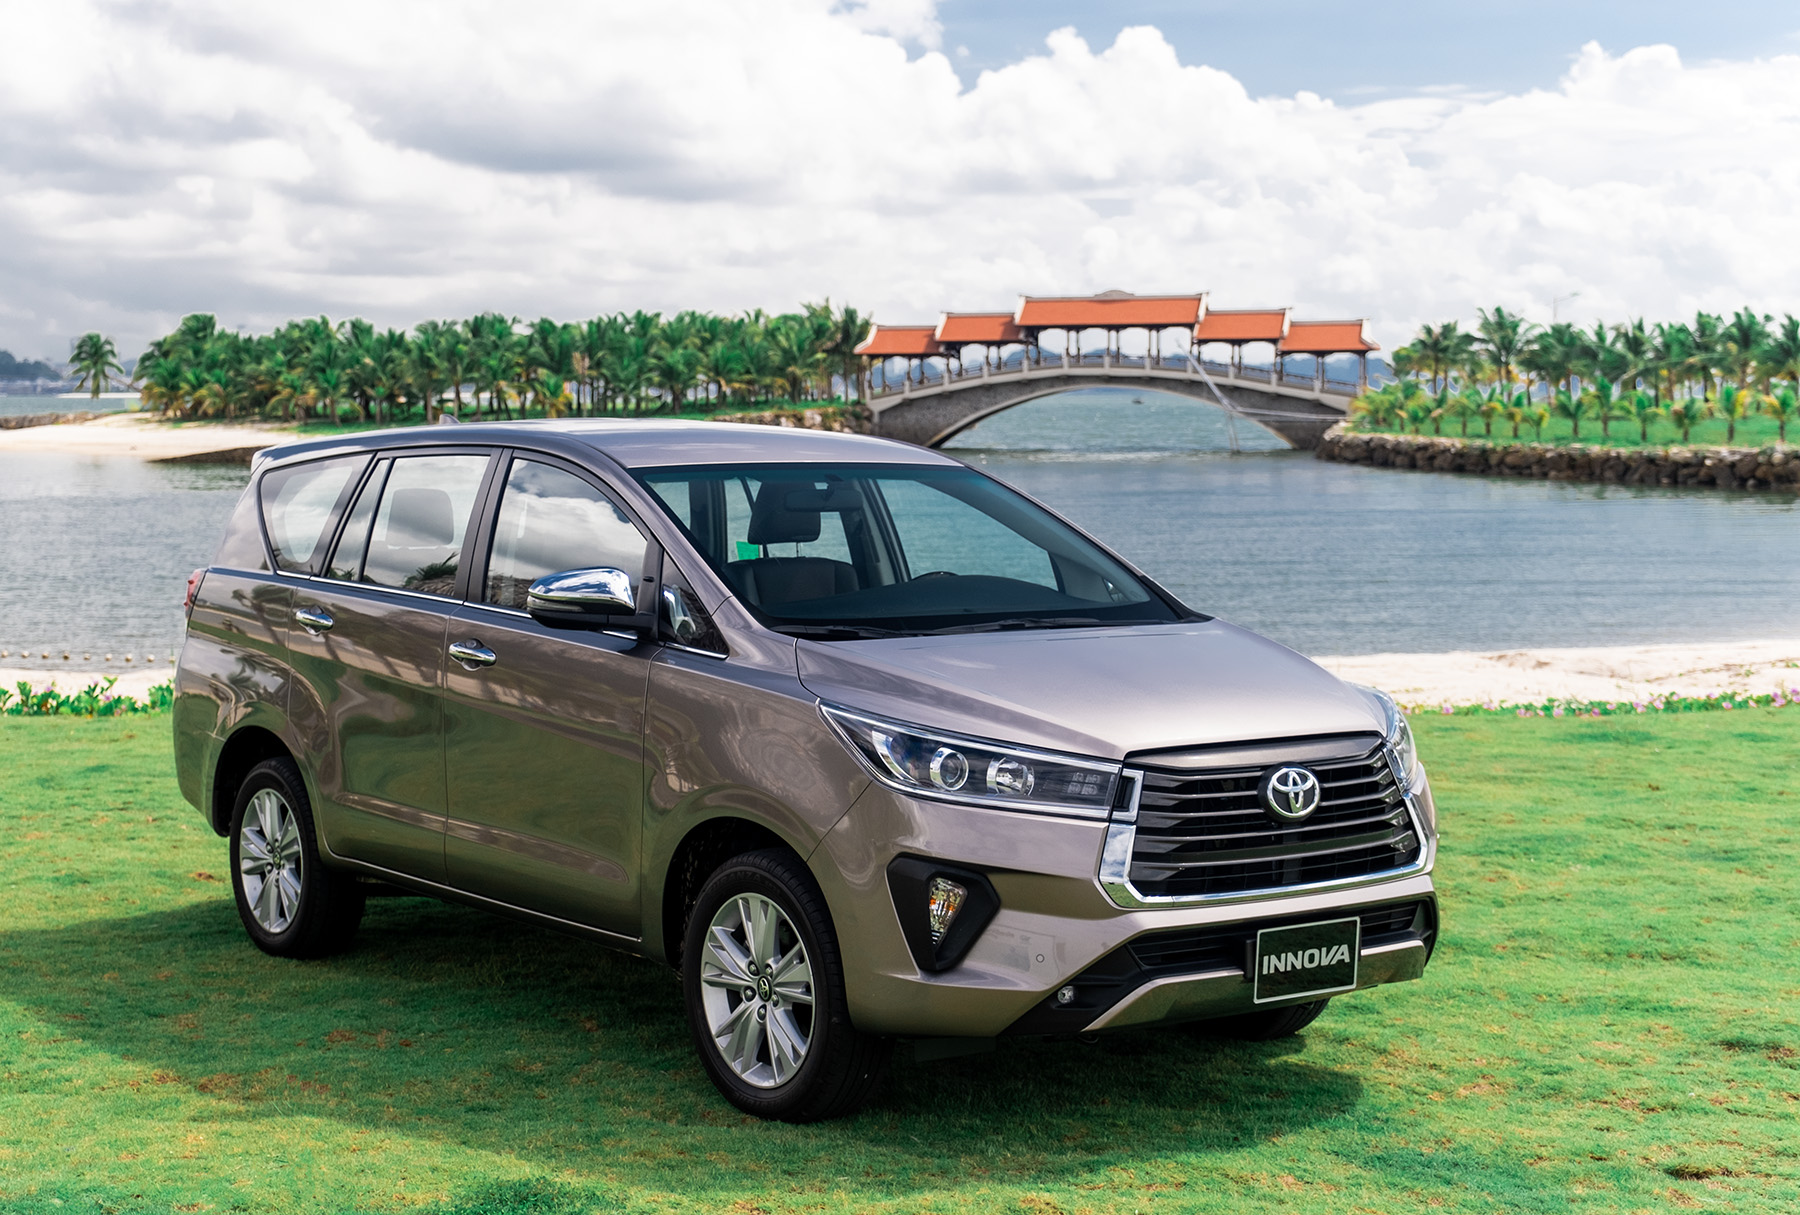 Không còn được lắp ráp, Toyota Innova thế hệ mới sẽ được nhập khẩu về Việt Nam? - Ảnh 2.